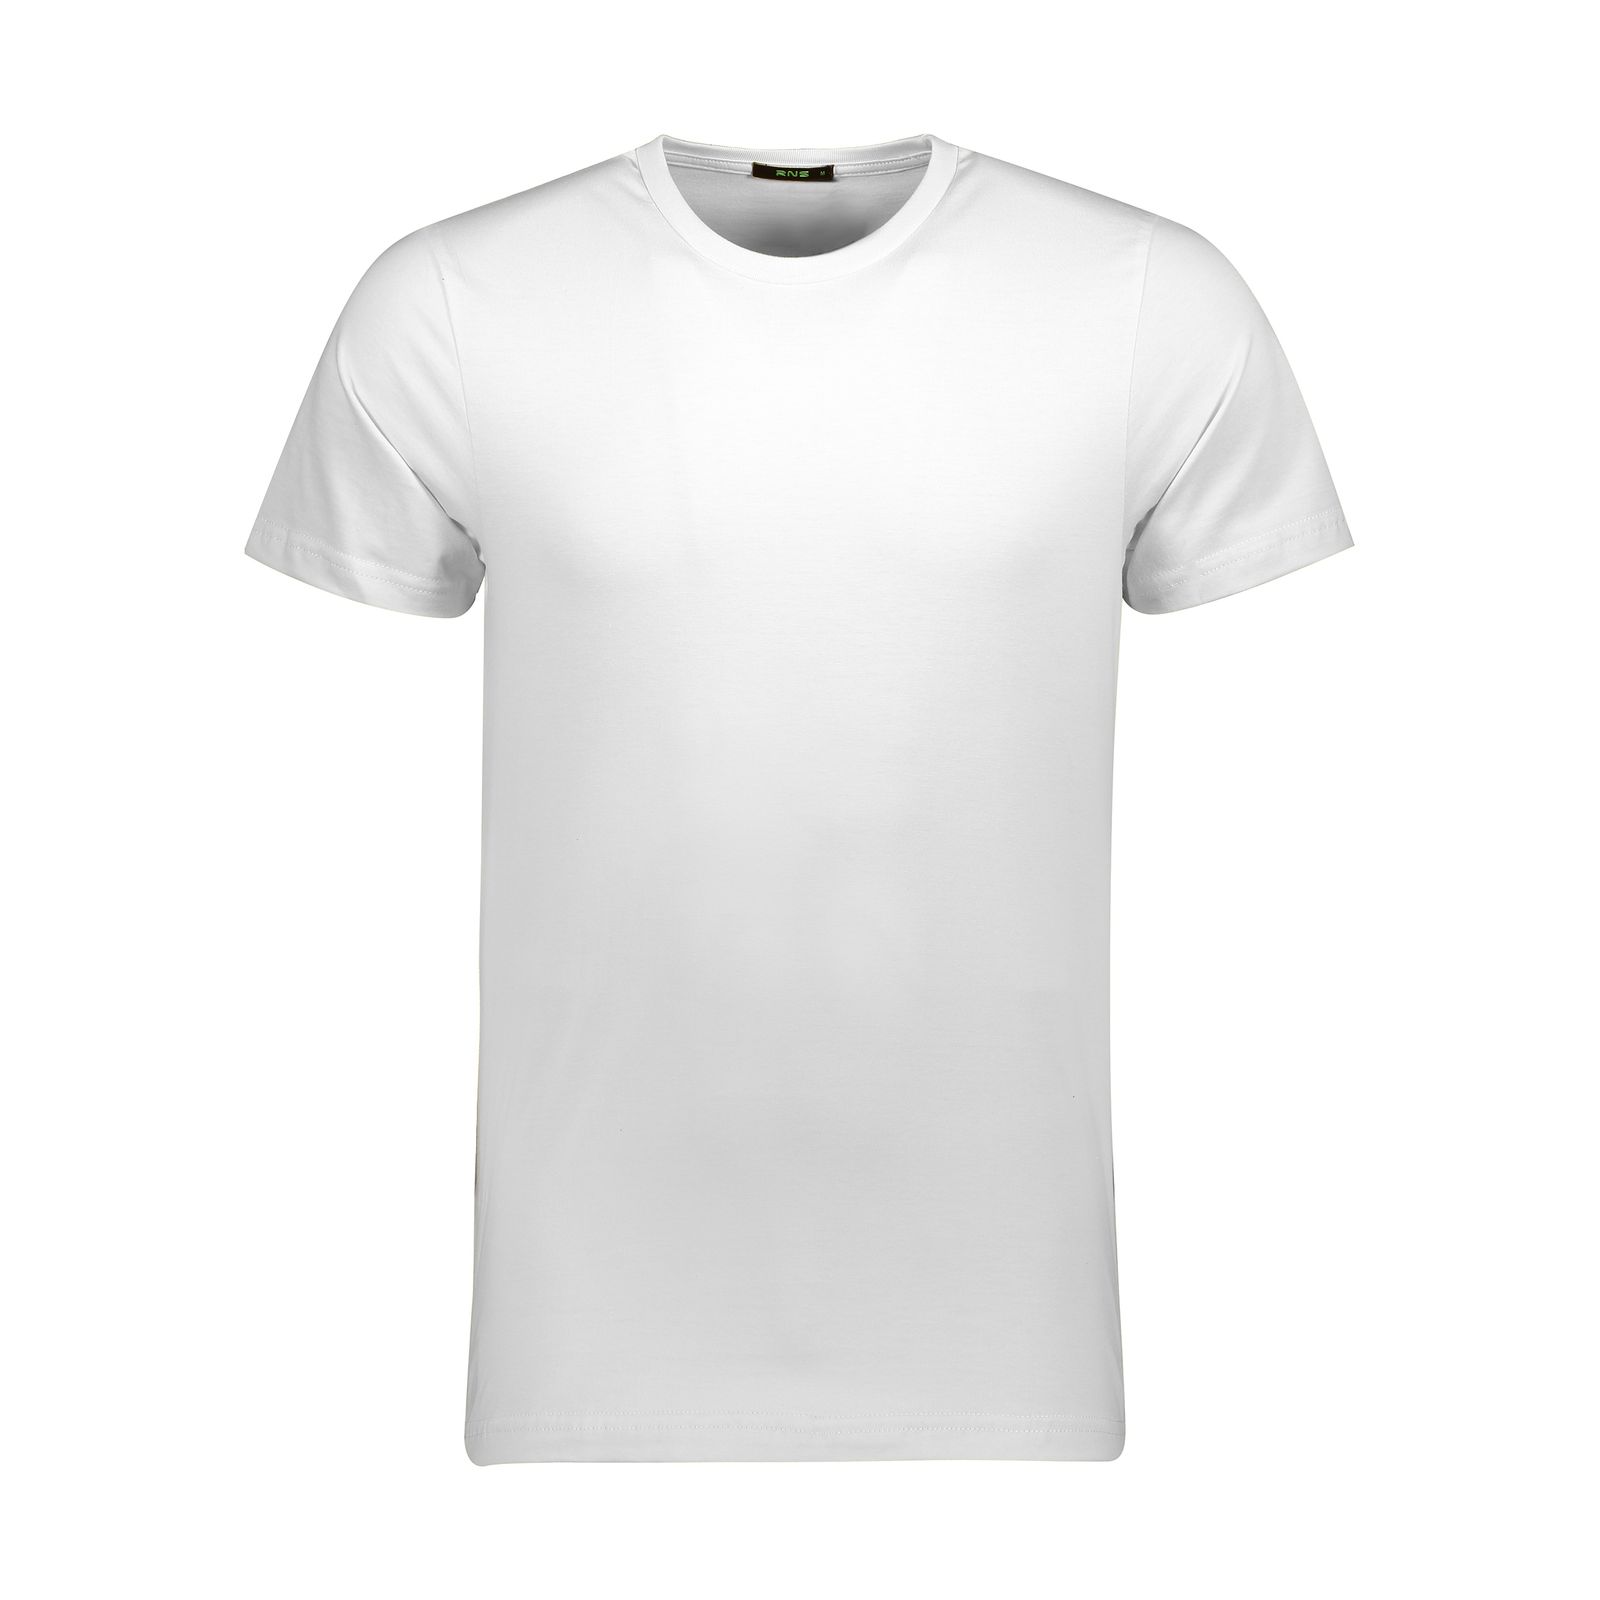 تی شرت مردانه آر ان اس مدل 2131005-01 -  - 1